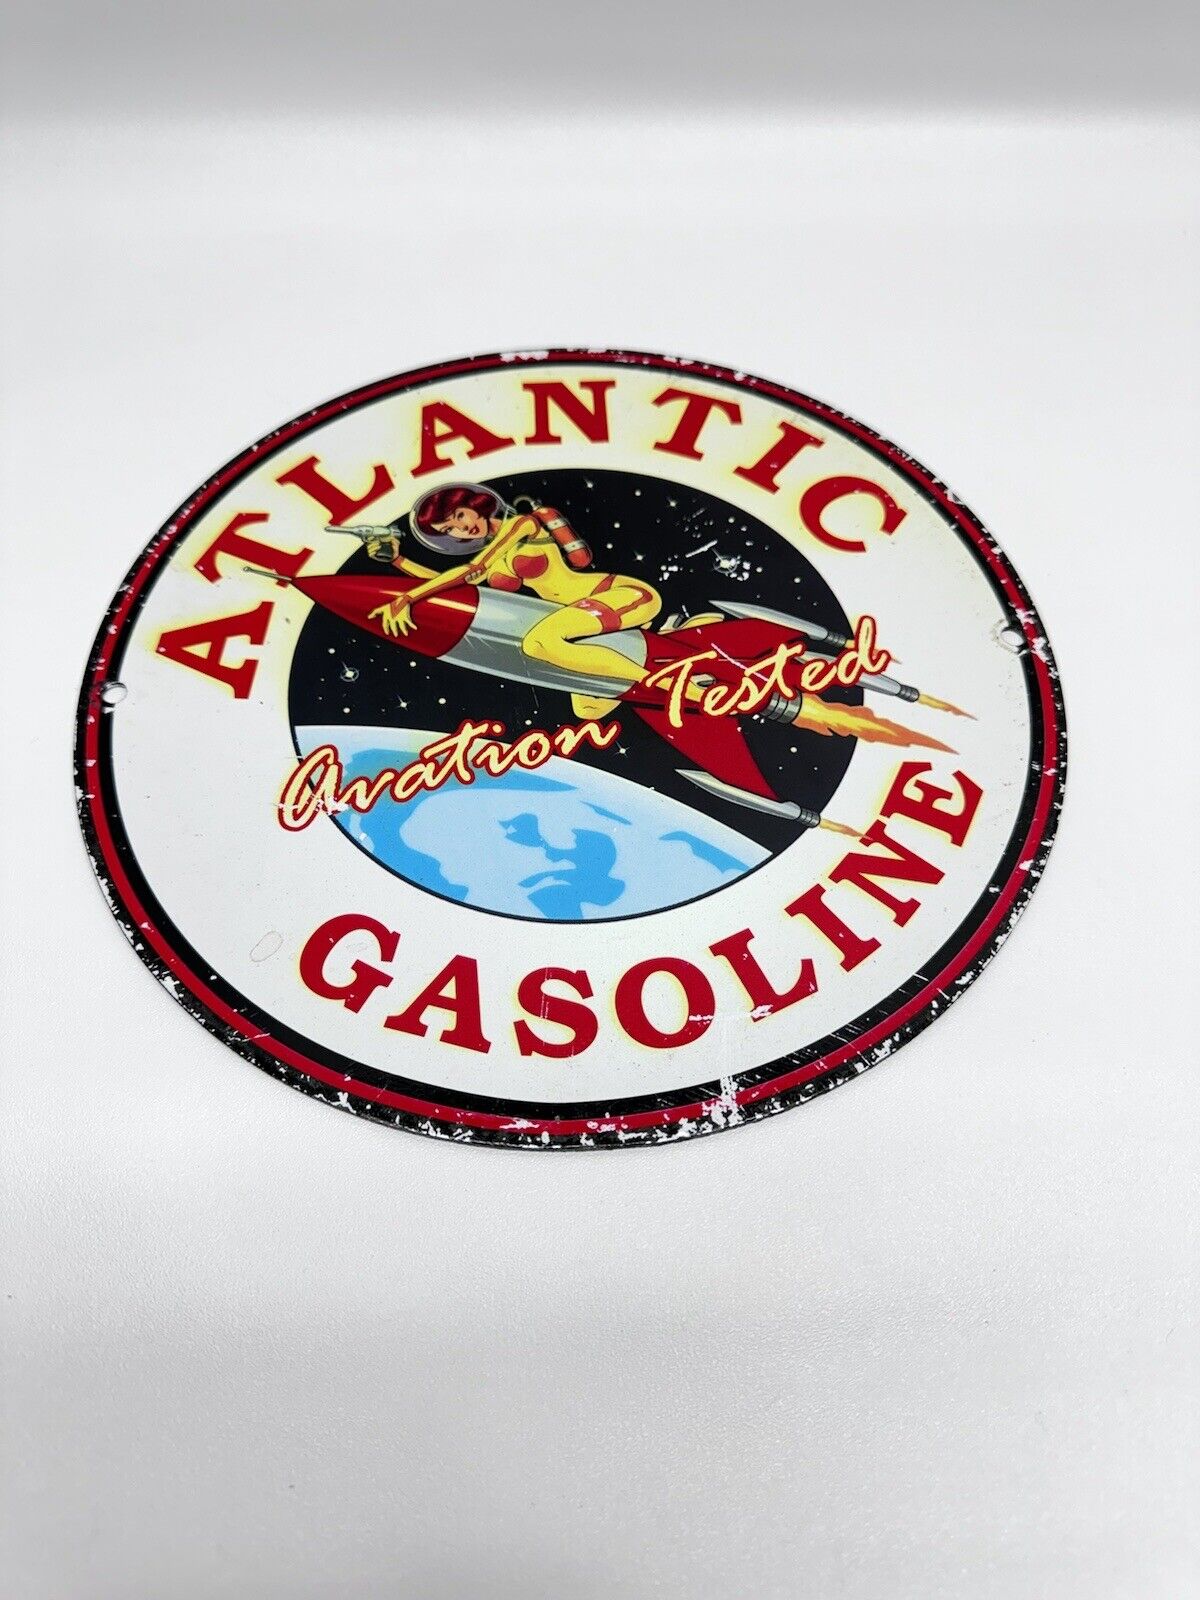 Atlantic Gasoline Vintage Style Porcelain Enamel Service Station Sign